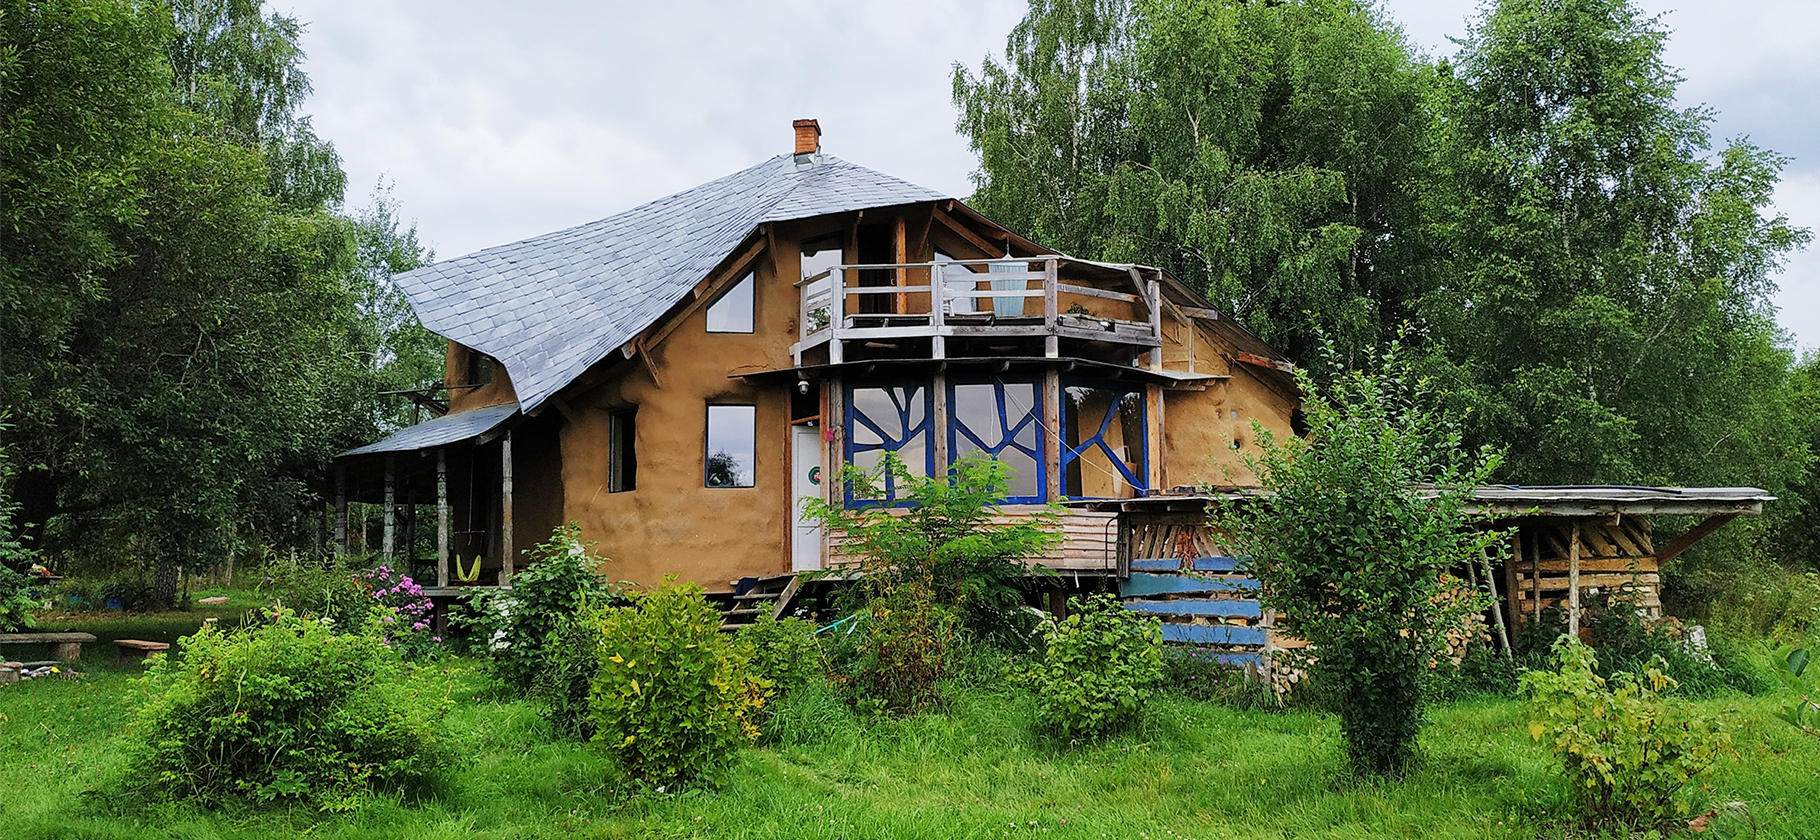 Как мы построили соломенный дом в Калужской области за 1 млн рублей